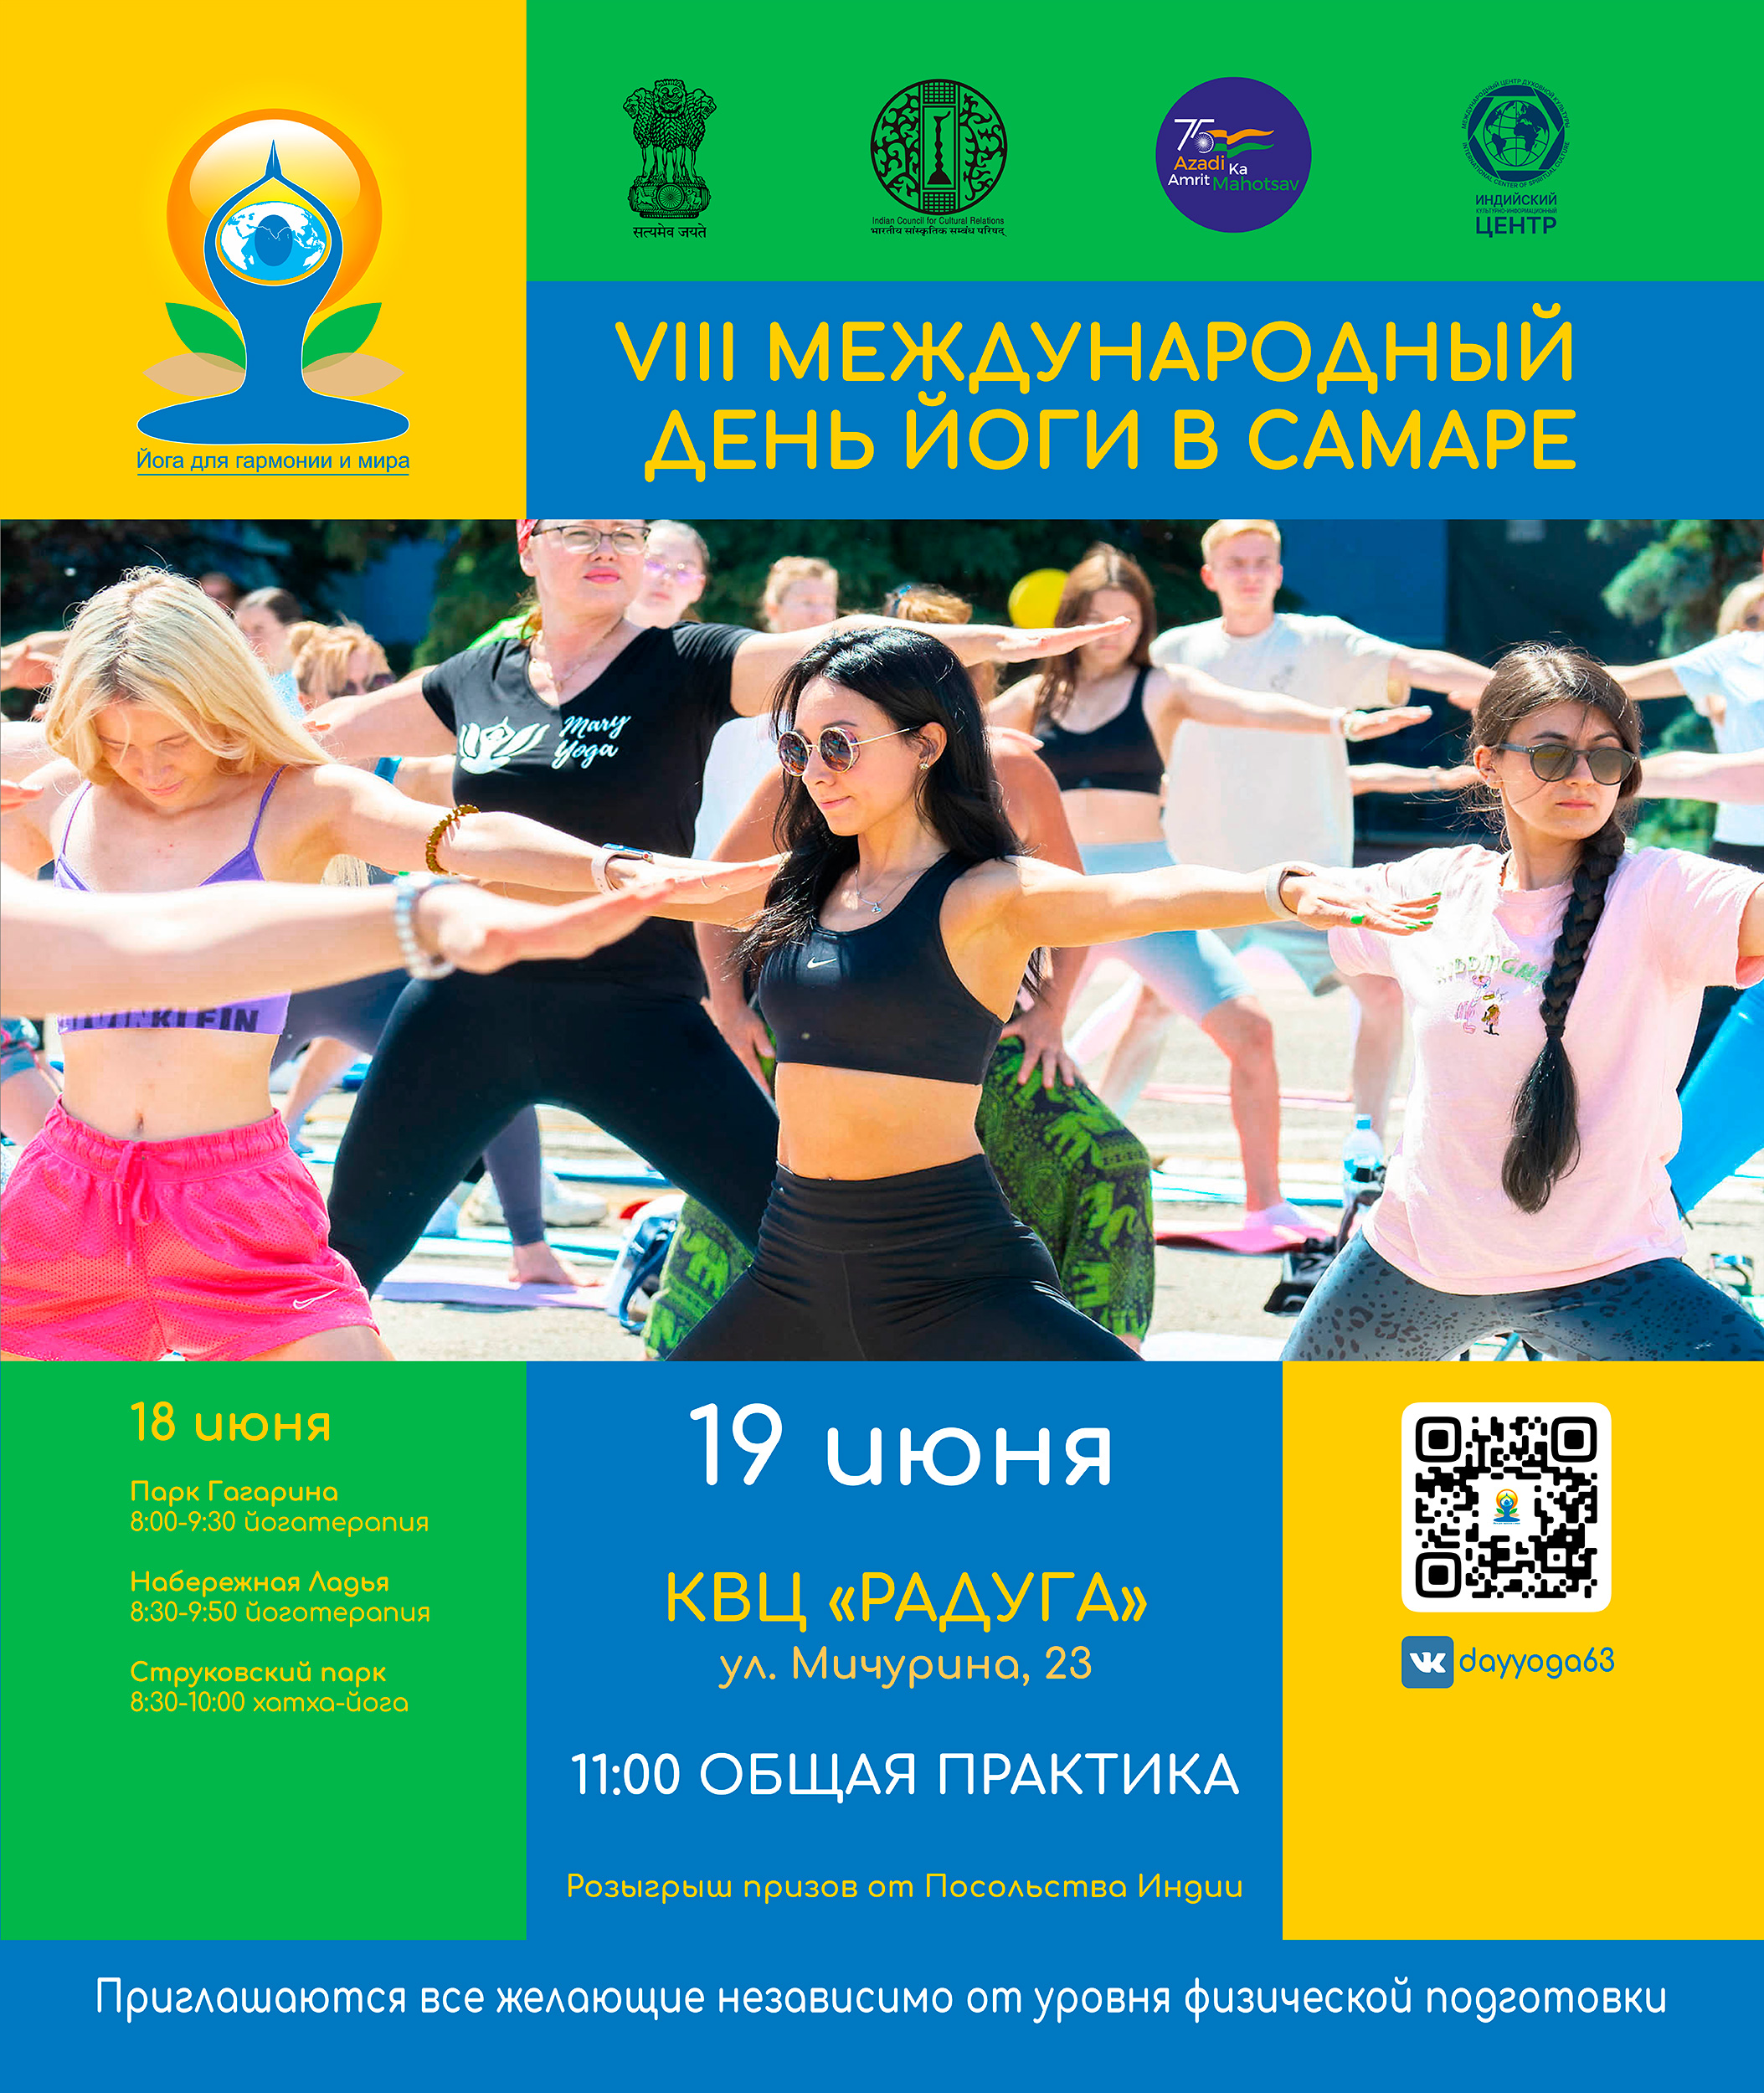 Самарцы могут принять участие в Международном дне йоги